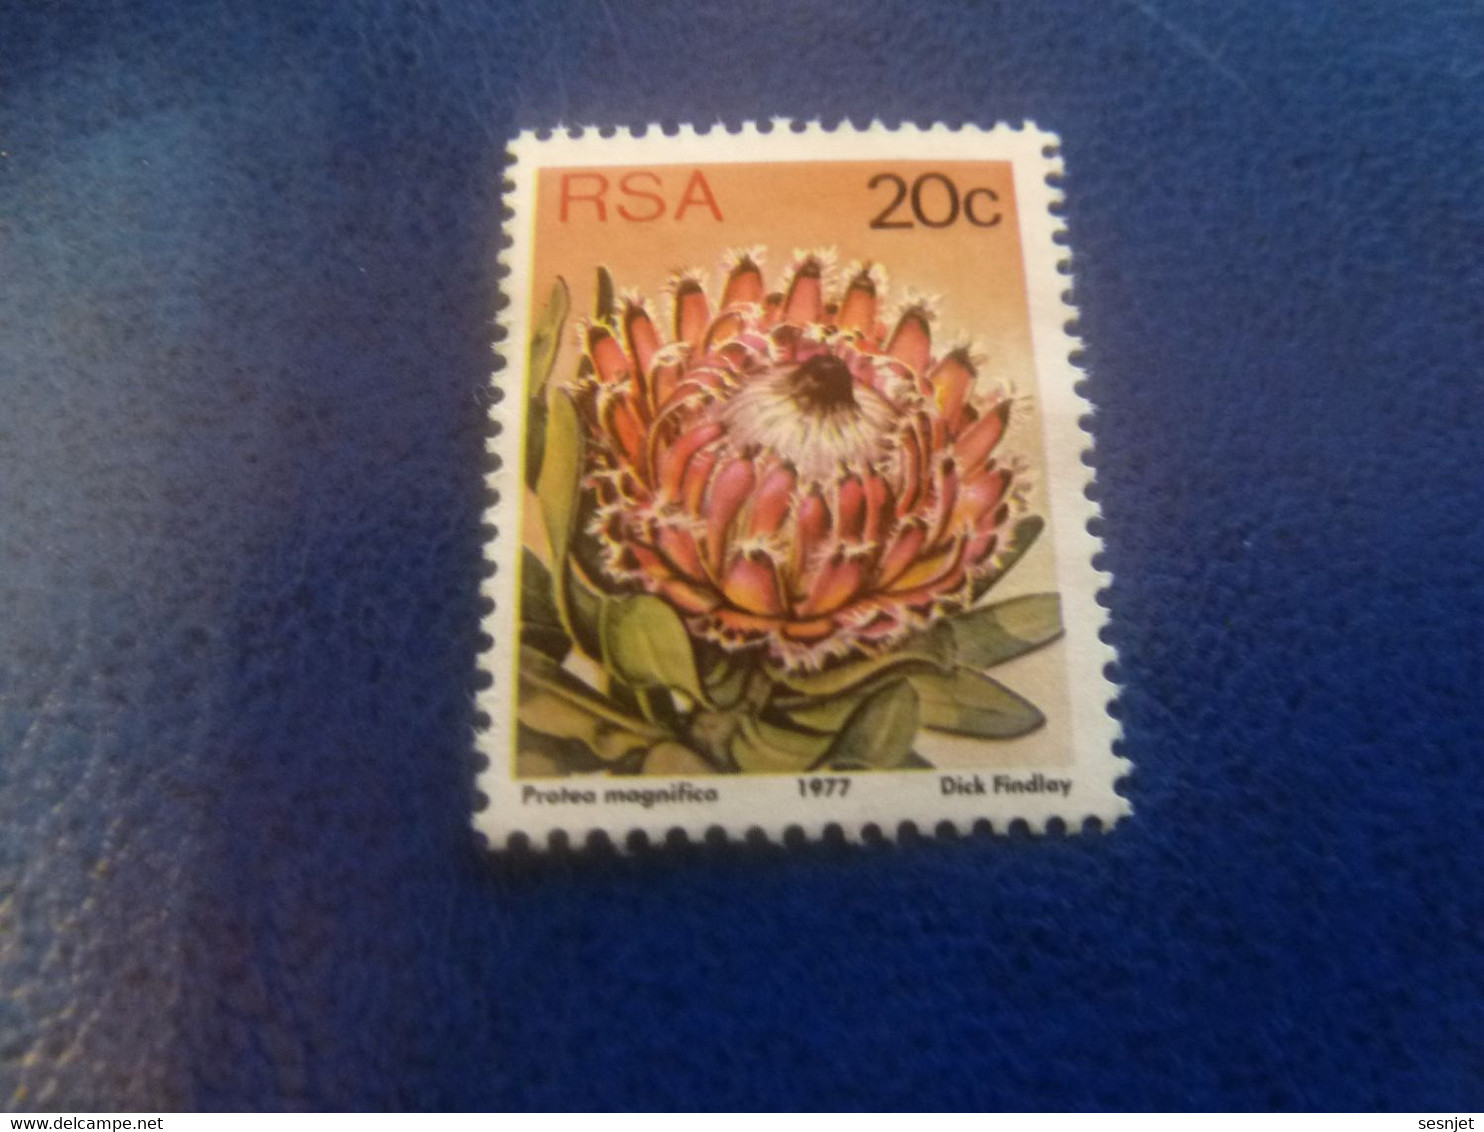 Rsa - Protea Punctata - Dick Findlay - 20 C. - Multicolore - Non Oblitéré - Année 1977 - - Used Stamps